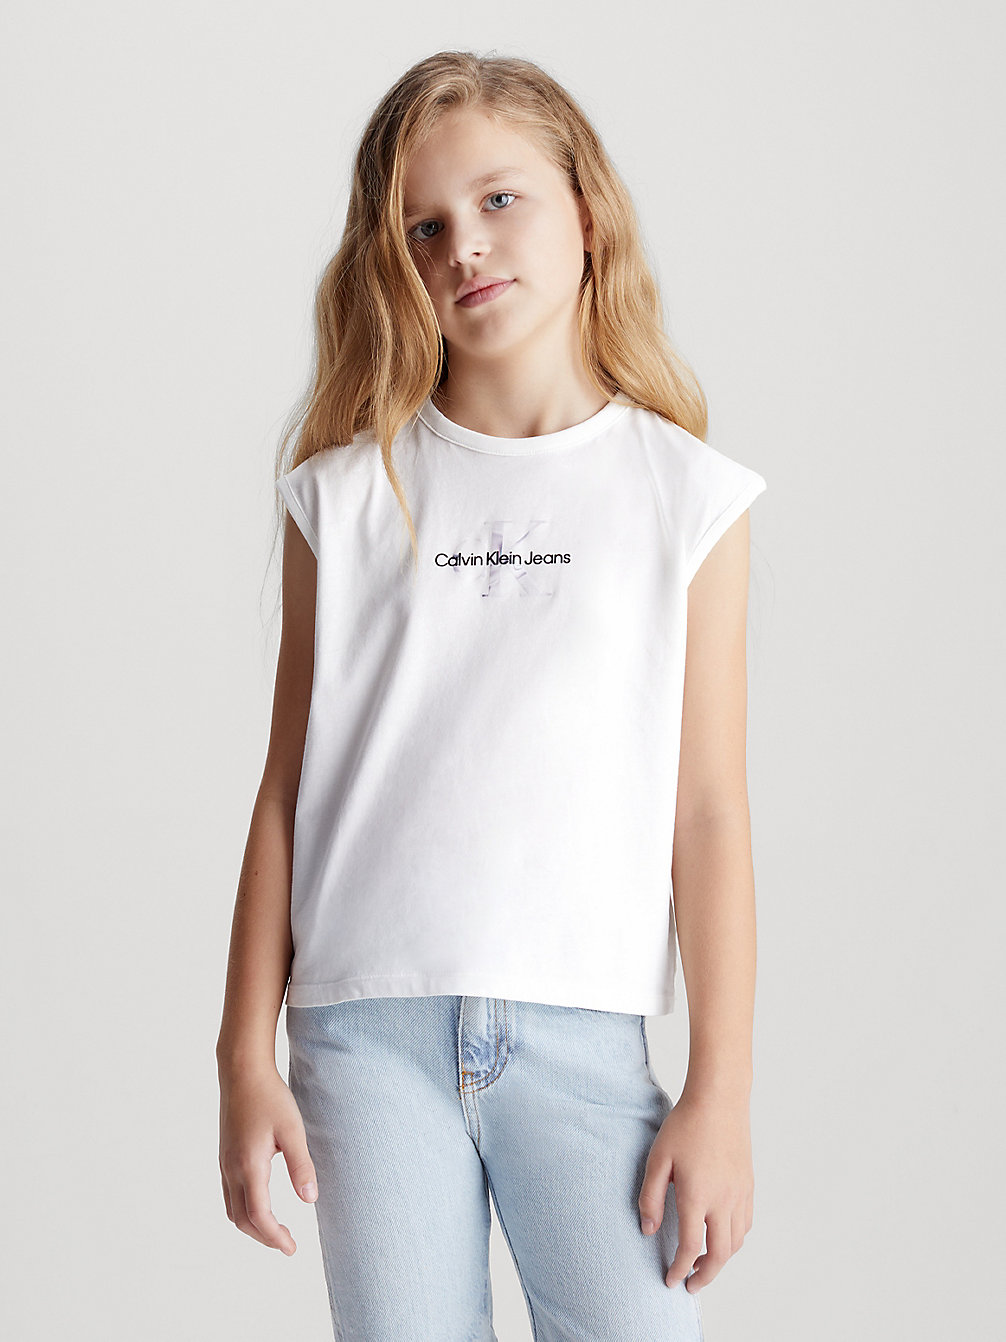 BRIGHT WHITE Tanktop Mit Metallic-Logo Für Kinder undefined Unisex Kinder Calvin Klein